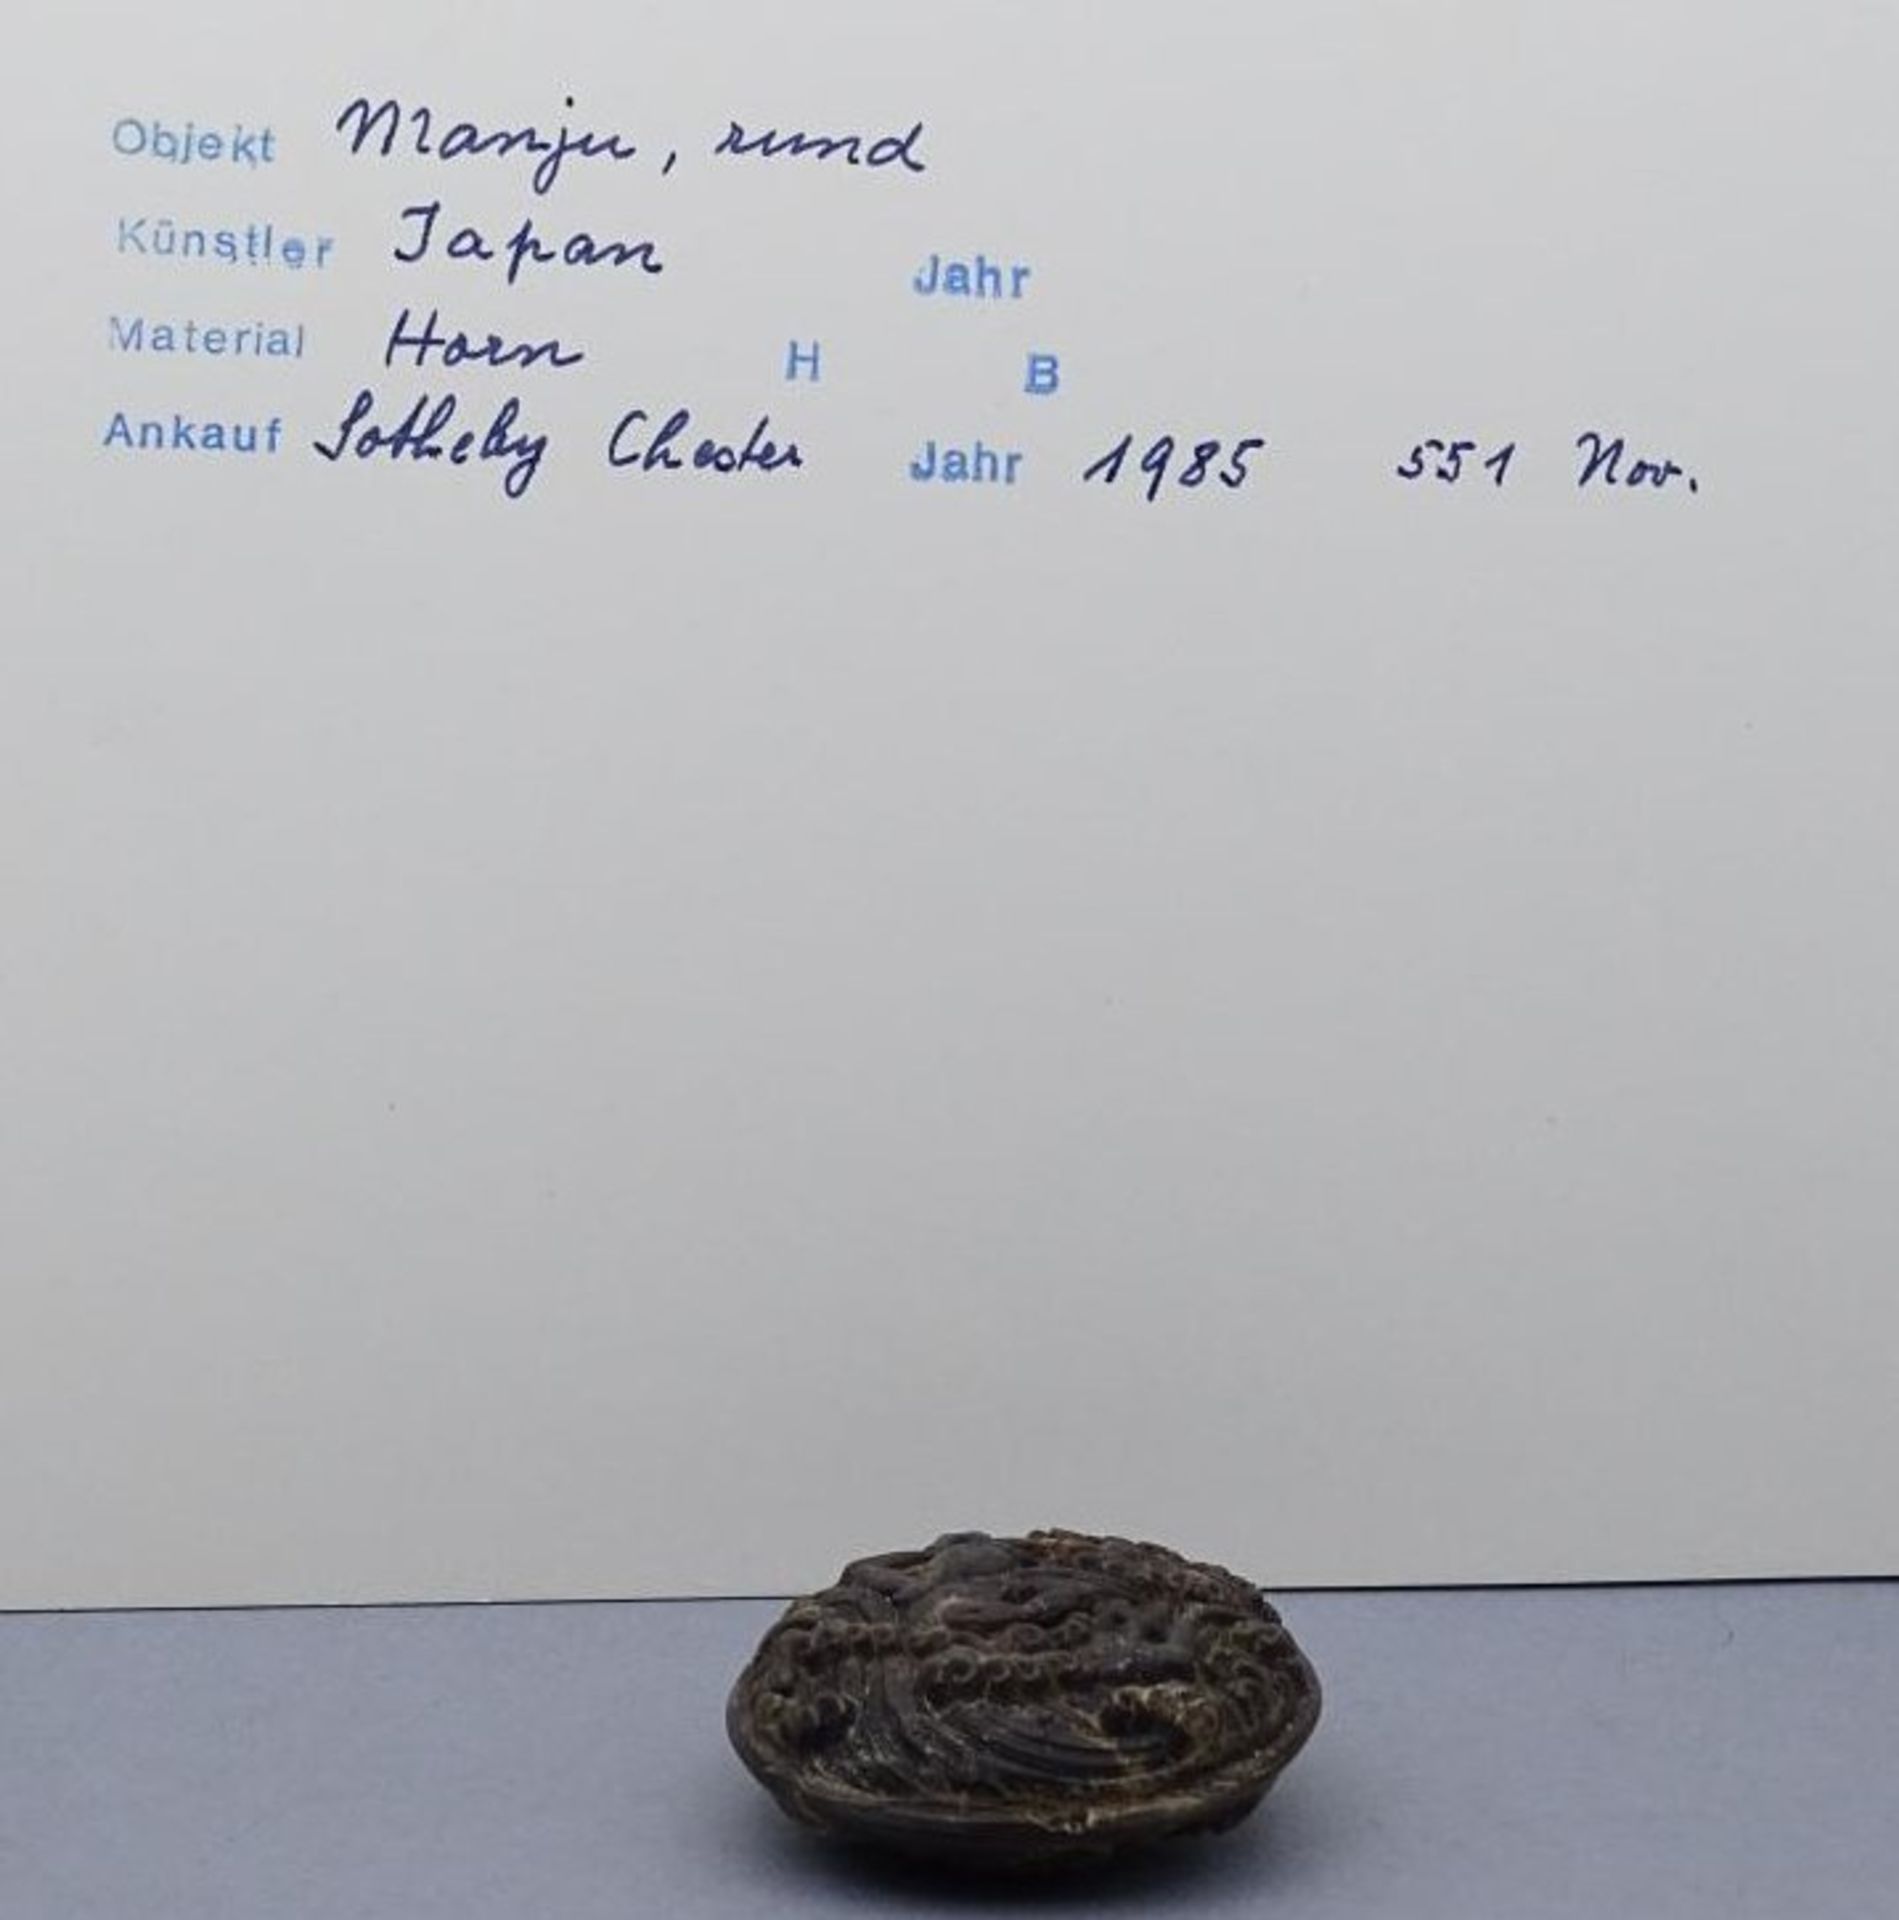 runder Manju Netsuke aus Horn; Japan, D-4 cm, mit Karte, Sothebys, 1985- - -22.61 % buyer's - Image 7 of 8